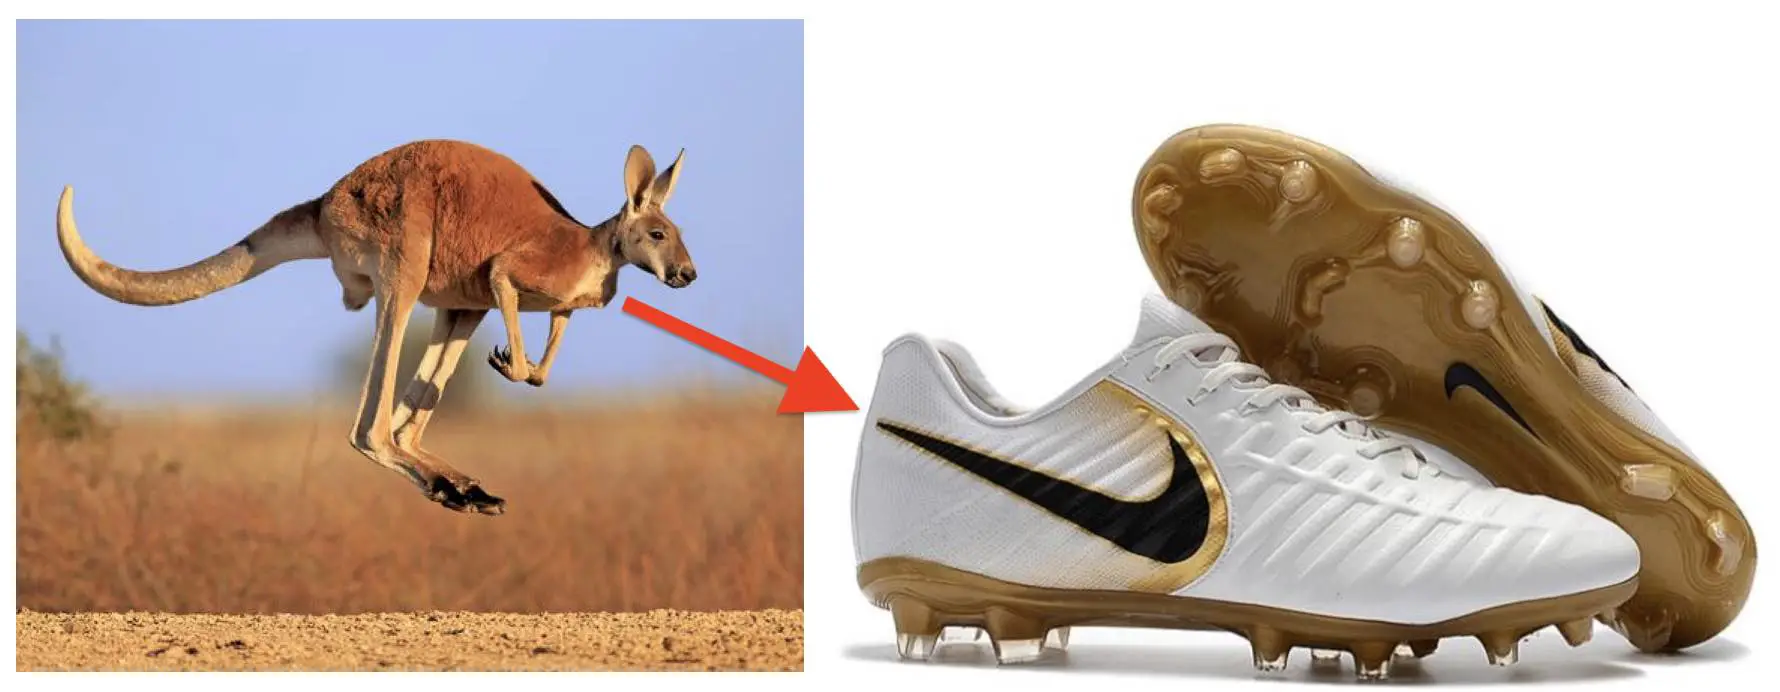 Does Nike Use Kangaroo Leather